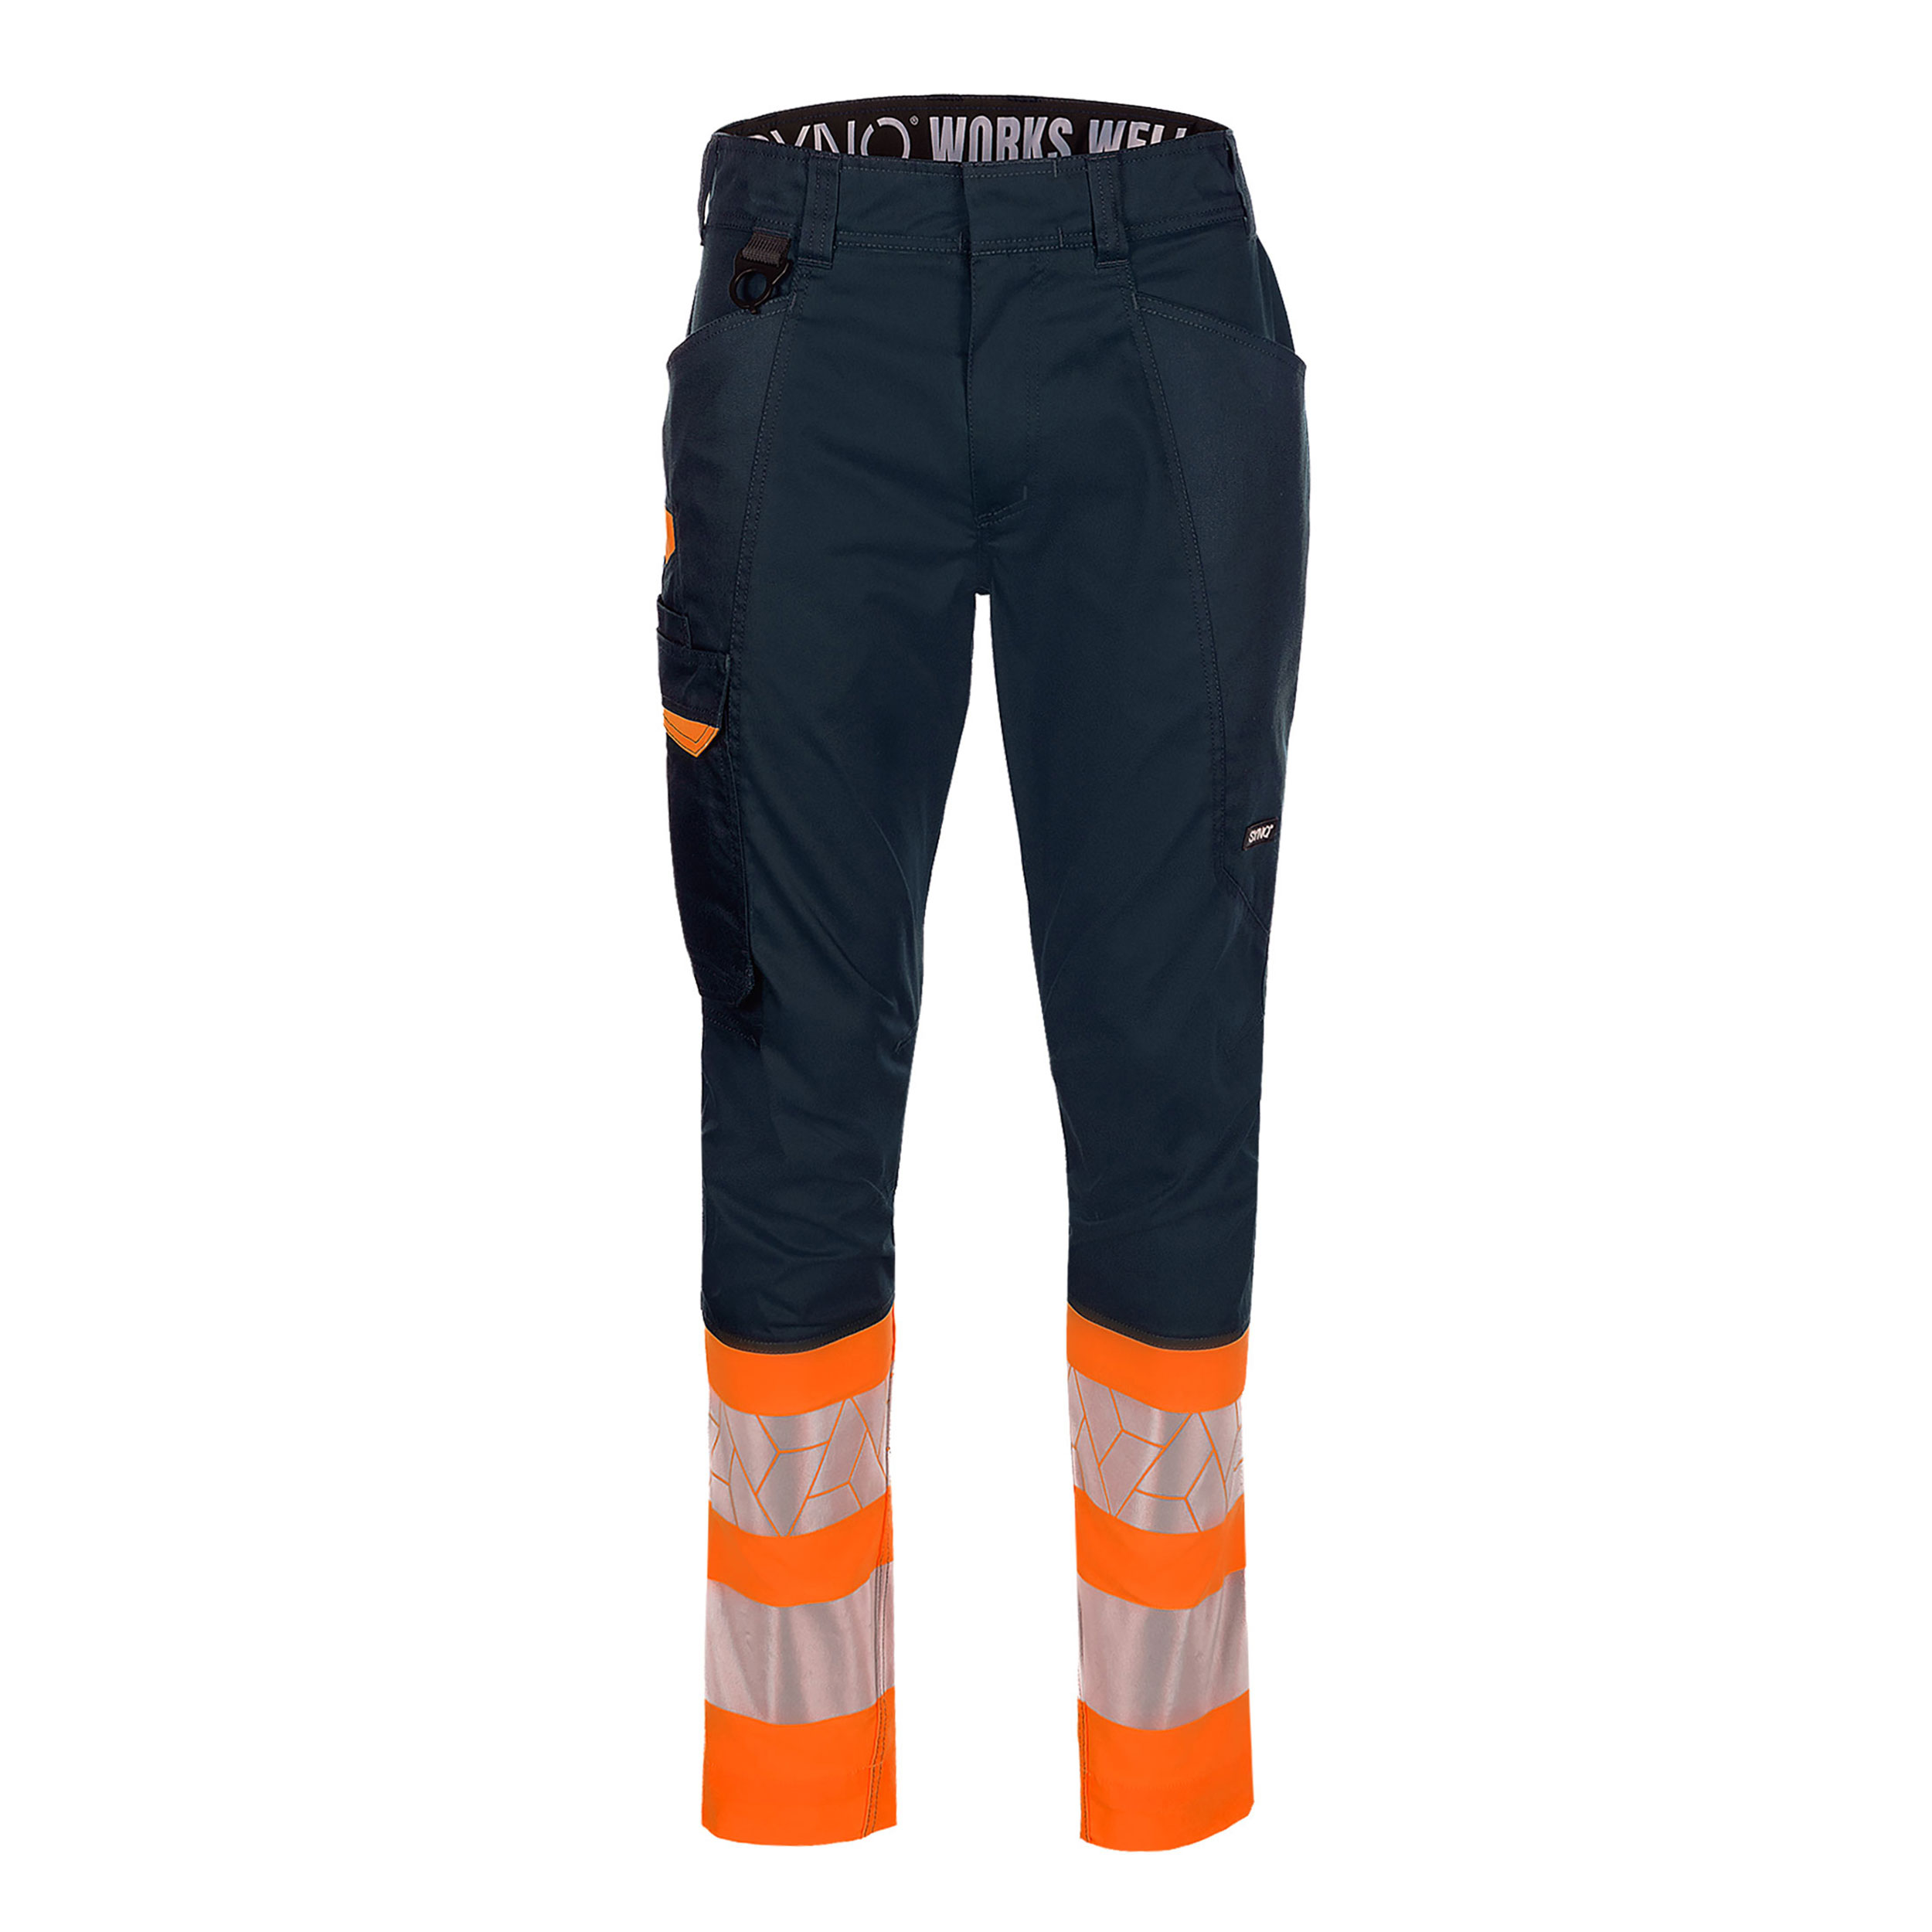 Pantalon de travail Synq&safe Showup Hi-Vis CL1 bleu/fluo-orange